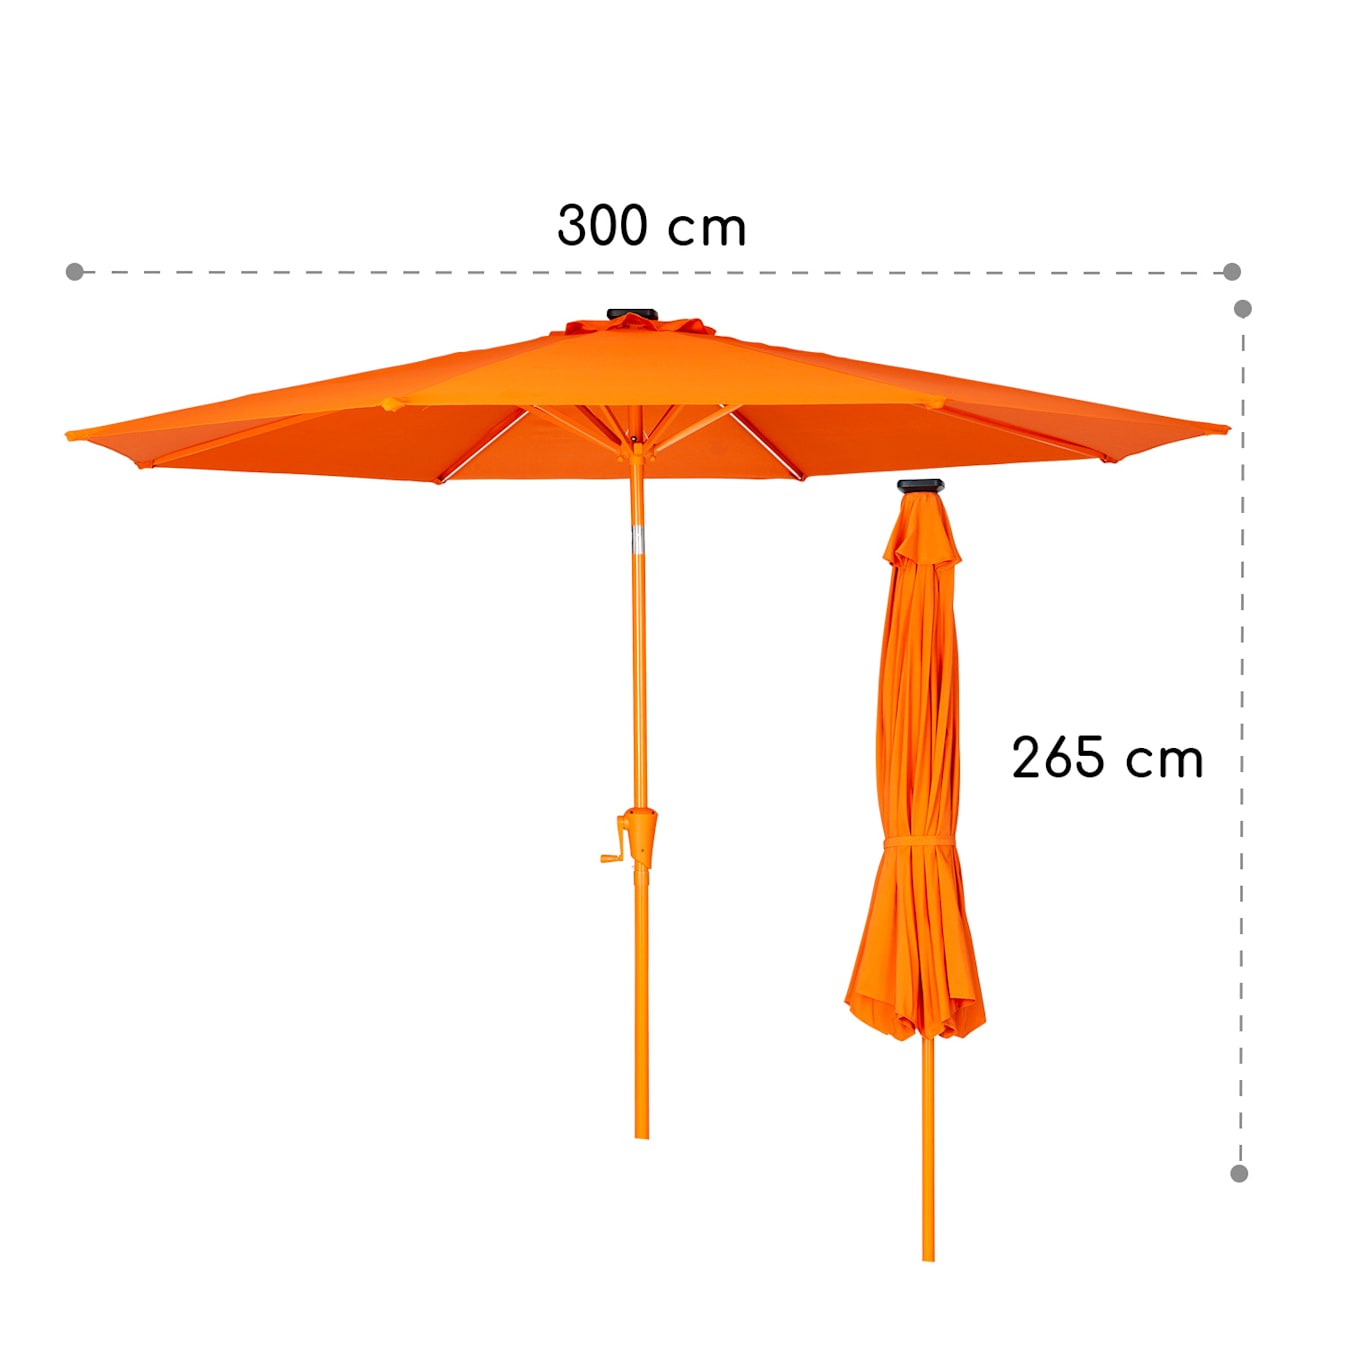 Heb geleerd Druppelen Universiteit blumfeldt Calais parasol | led-verlichting | met zonnepaneel |  afstandsbediening | flexibel verstelbaar | opspannen met zwengel |  afmetingen: 3 x 2,65 x 3 m | UV-beschermingsklasse 50 | waterafstotend  Oranje